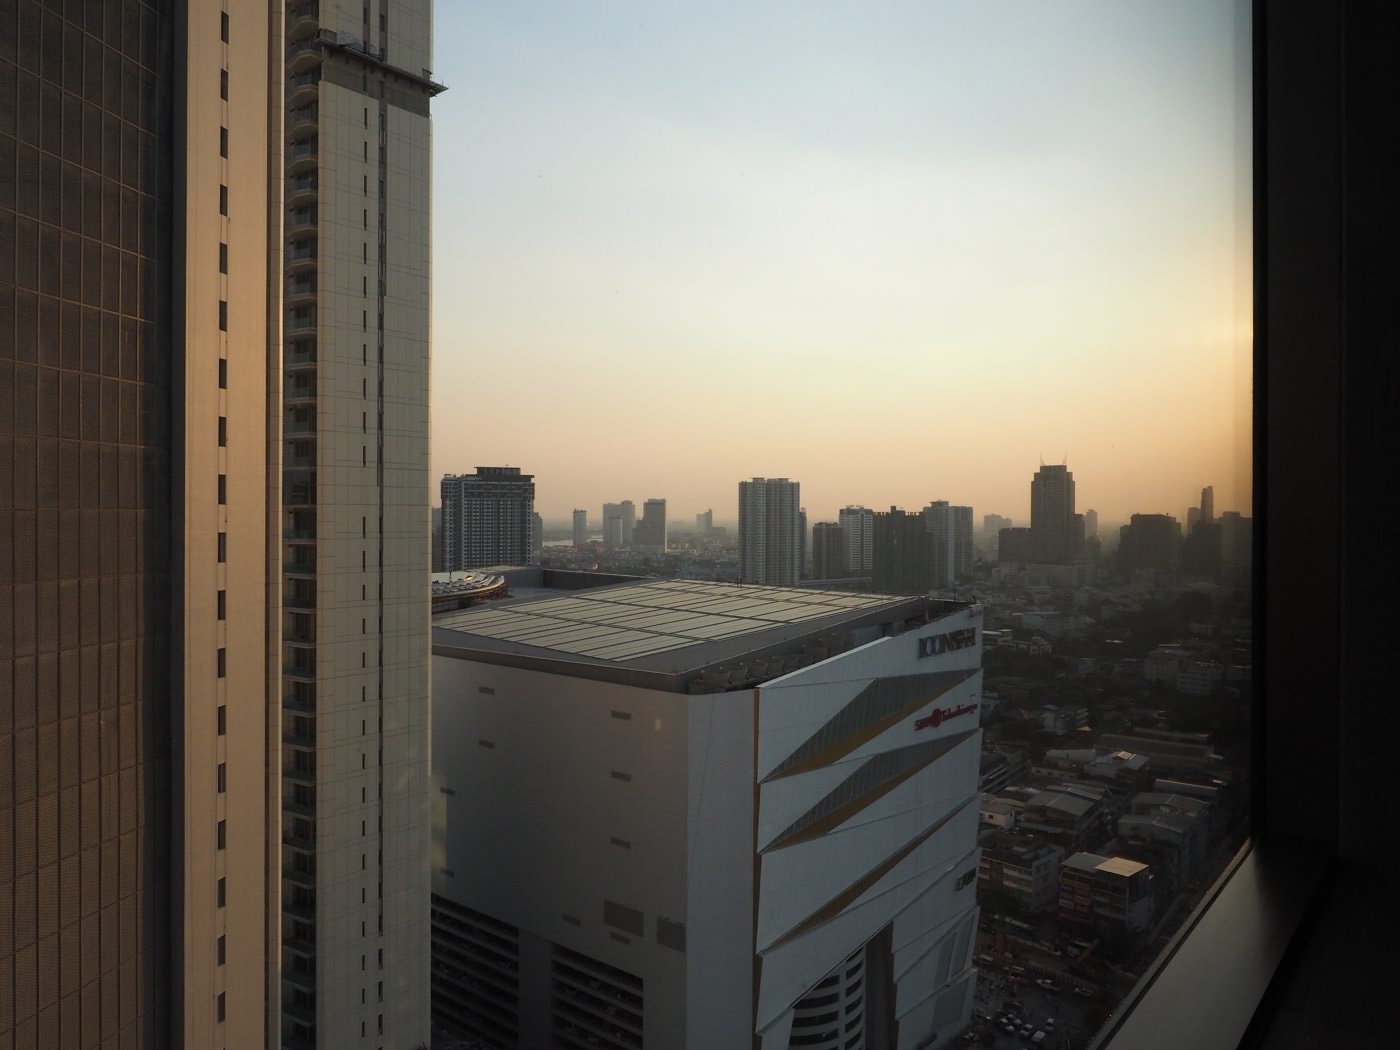 曼谷住宿 千禧希爾頓飯店 Millennium Hilton Bangkok - 升等行政客房 Executive Room - 一口冒險 Bitesized Adventure